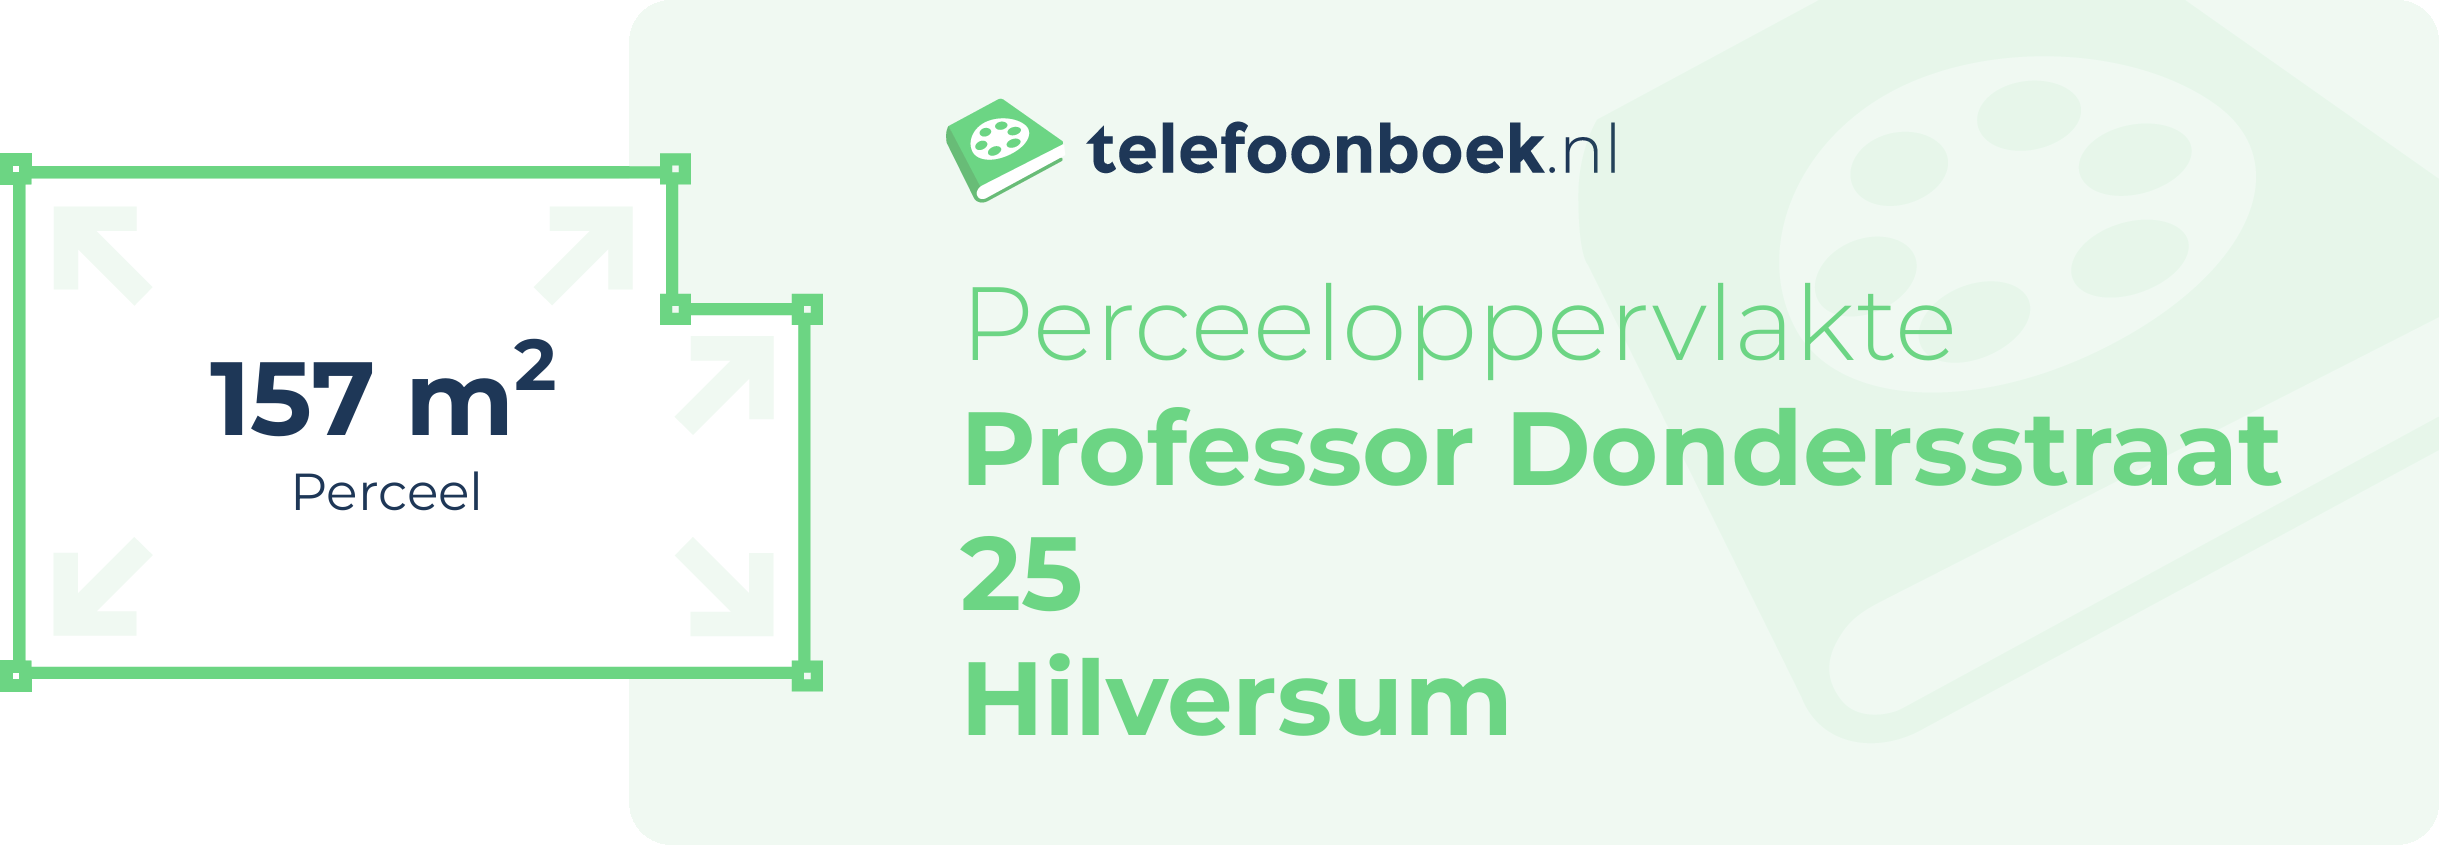 Perceeloppervlakte Professor Dondersstraat 25 Hilversum